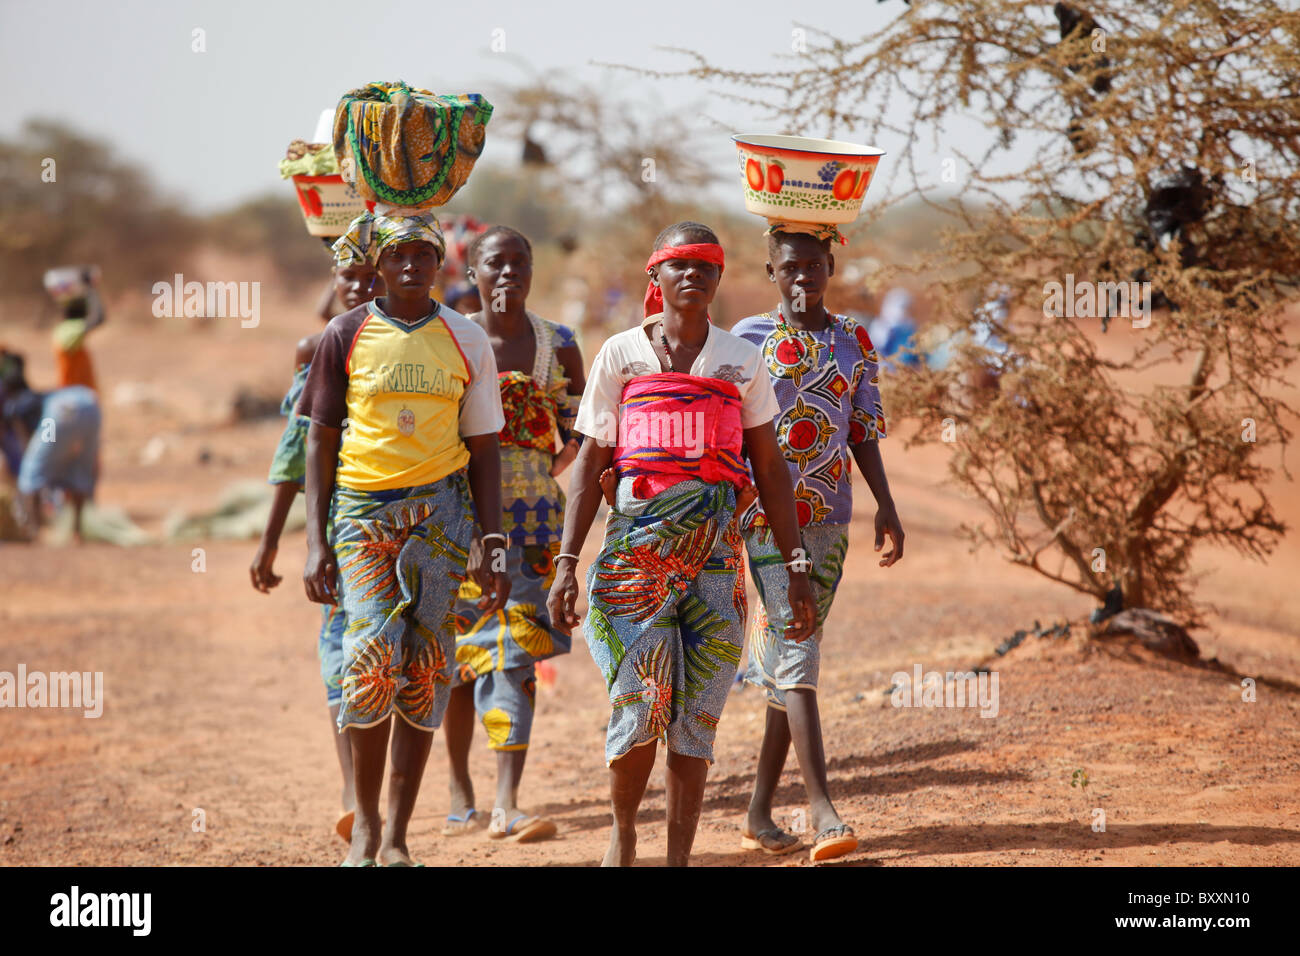 Les femmes arrivent dans la ville de Djibo, au Burkina Faso, à pied, transportant leurs marchandises sur leurs têtes à la mode traditionnelle africaine. Banque D'Images